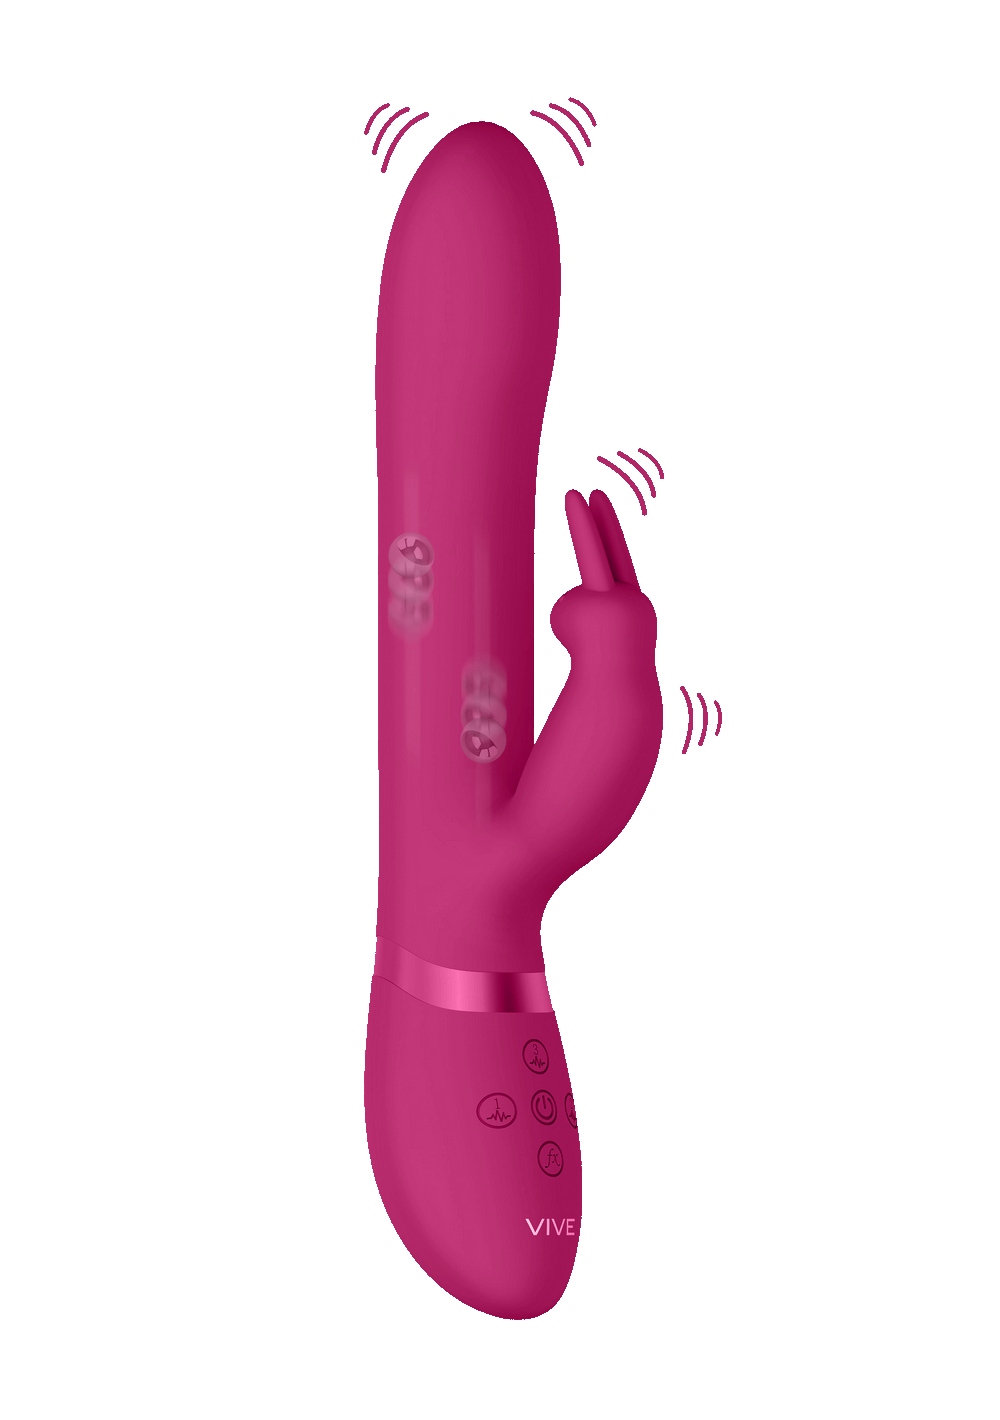 Shots Vive Amoris Rabbit Vibrator - Pink